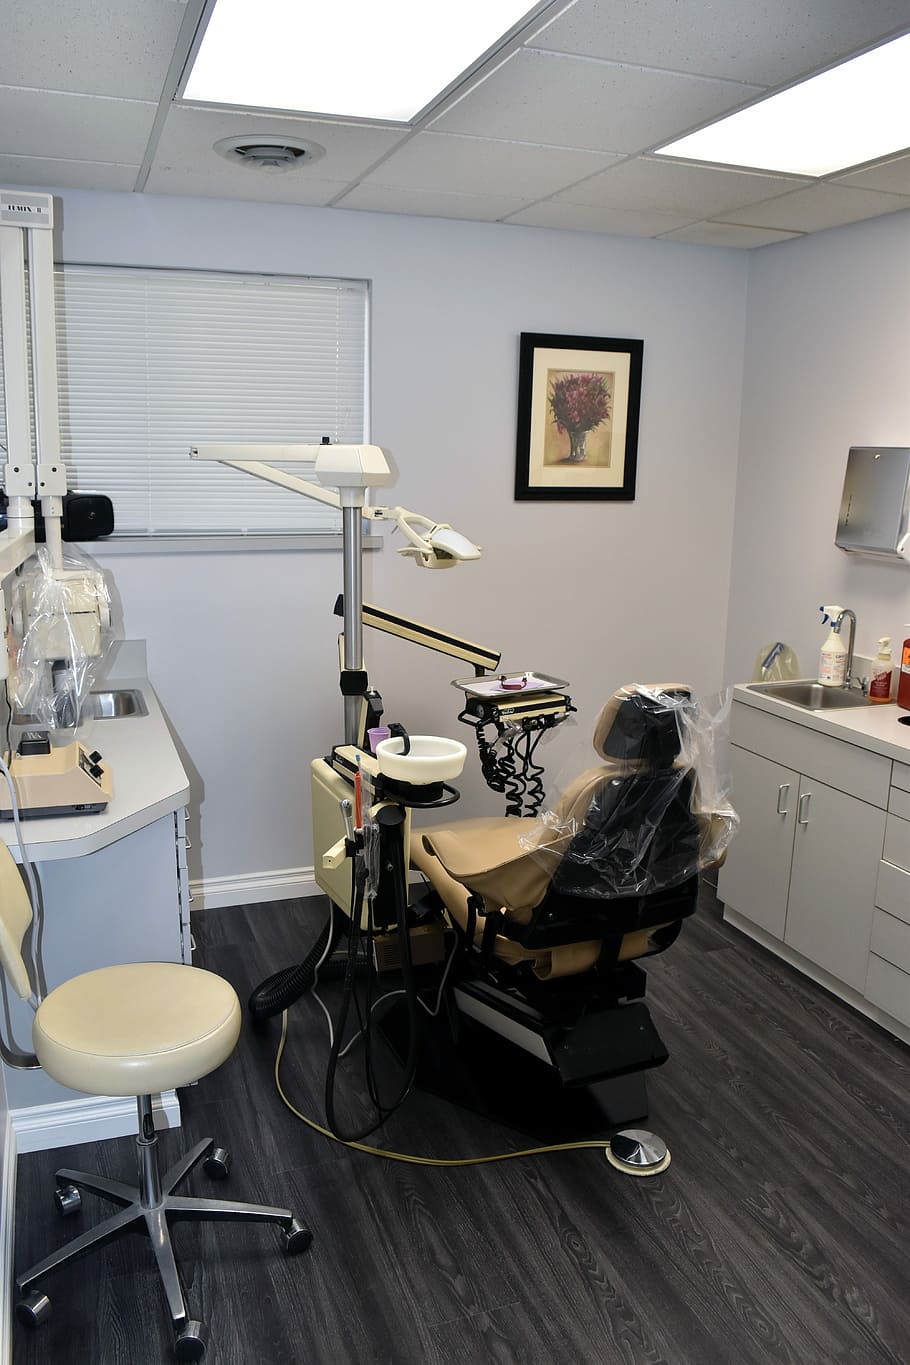 silla de dentista vacía, dentista, consultorio, examen, sala, dental, higiene, medicina, odontología, salud